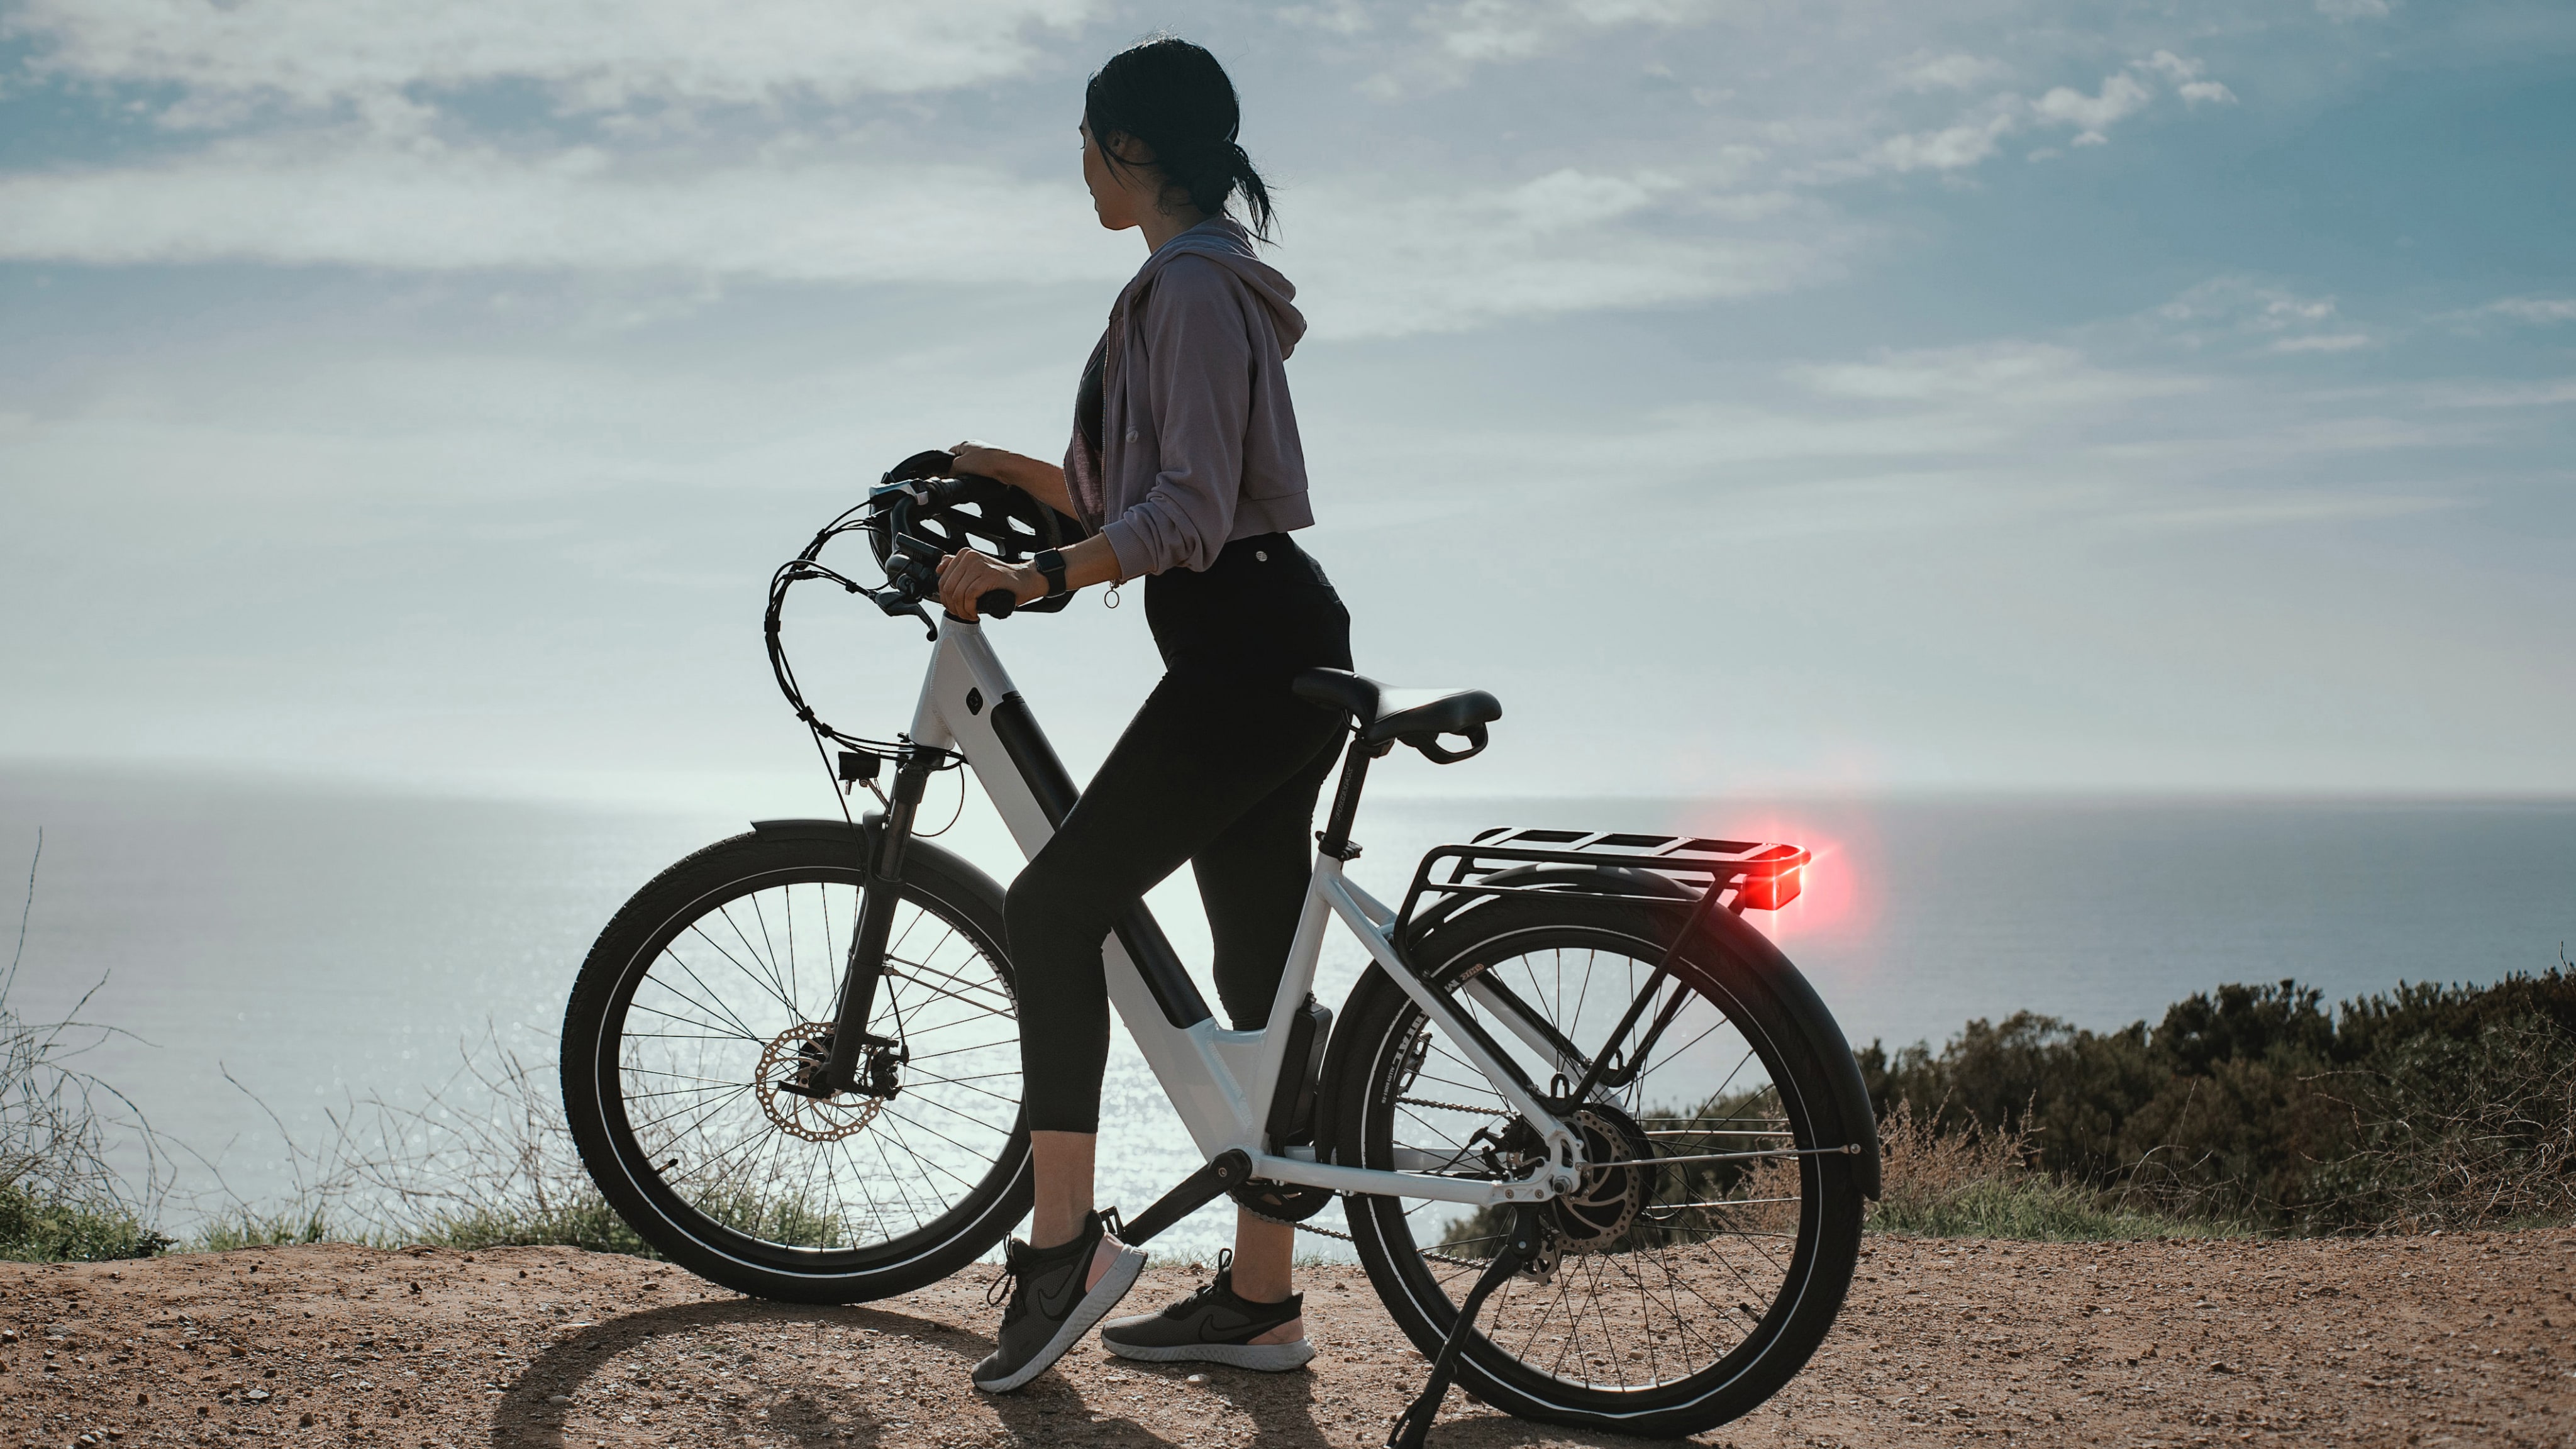 Digitalt bakspejl RS 1000 til cykler: Mere sikkerhed for cyklister på vejen